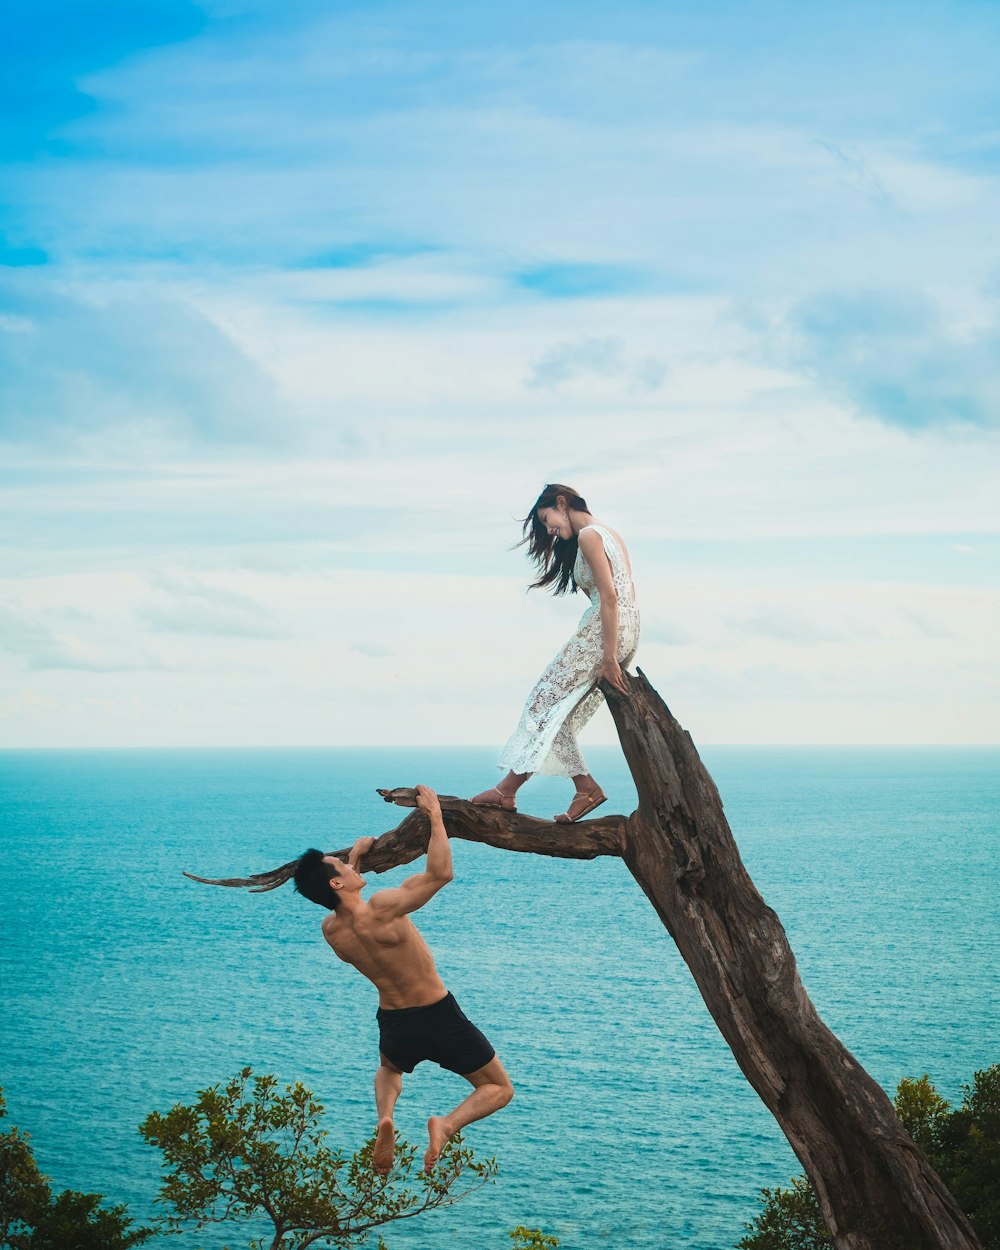 Mujer sentada en el tronco del árbol con el hombre sosteniendo en la rama cerca del mar bajo las nubes blancas durante el día